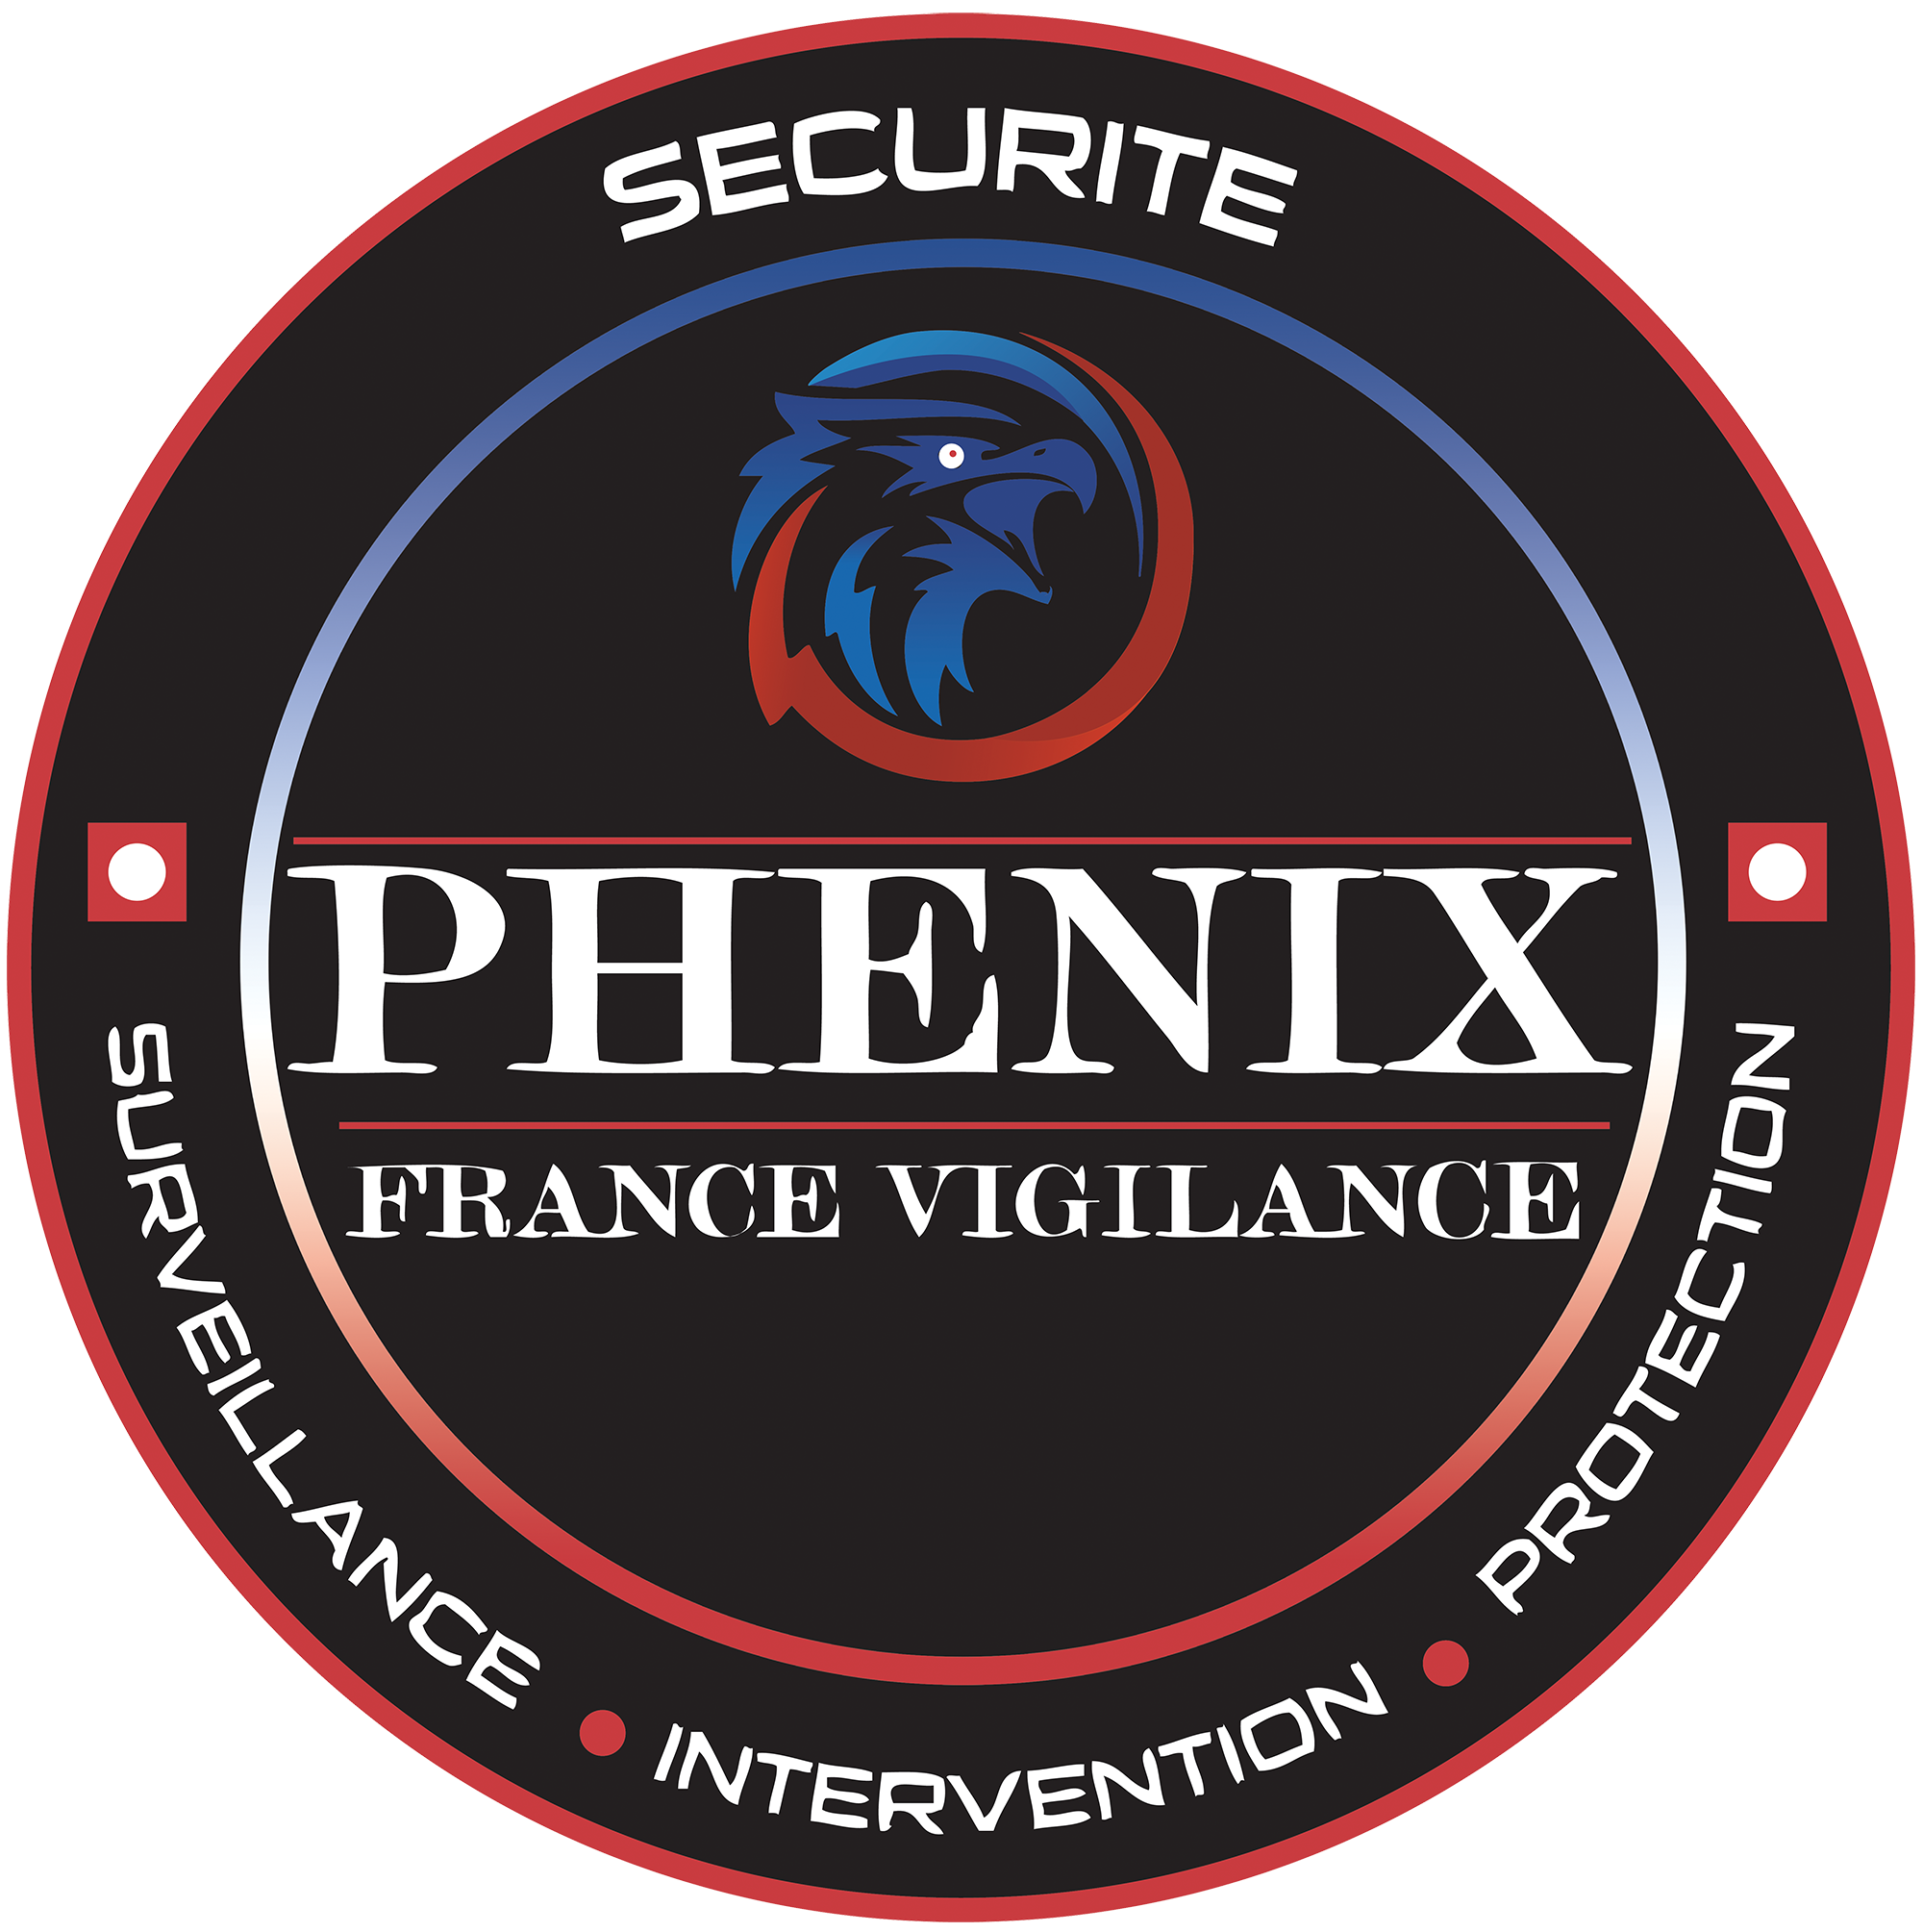 PHENIX FRANCE VIGILANCE 
, Société de sécurité privée à Toulouse